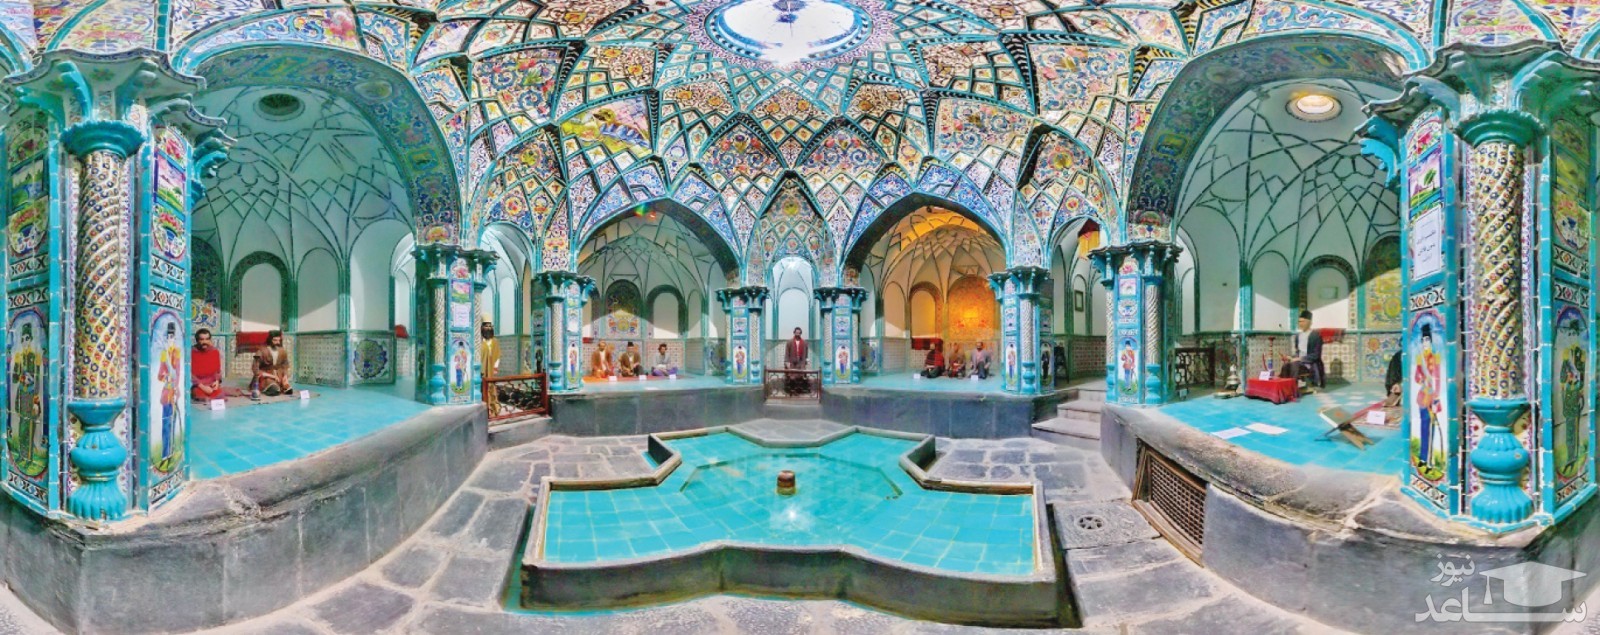 آشنایی با پیشینه و آداب و رسوم حمام های ایران